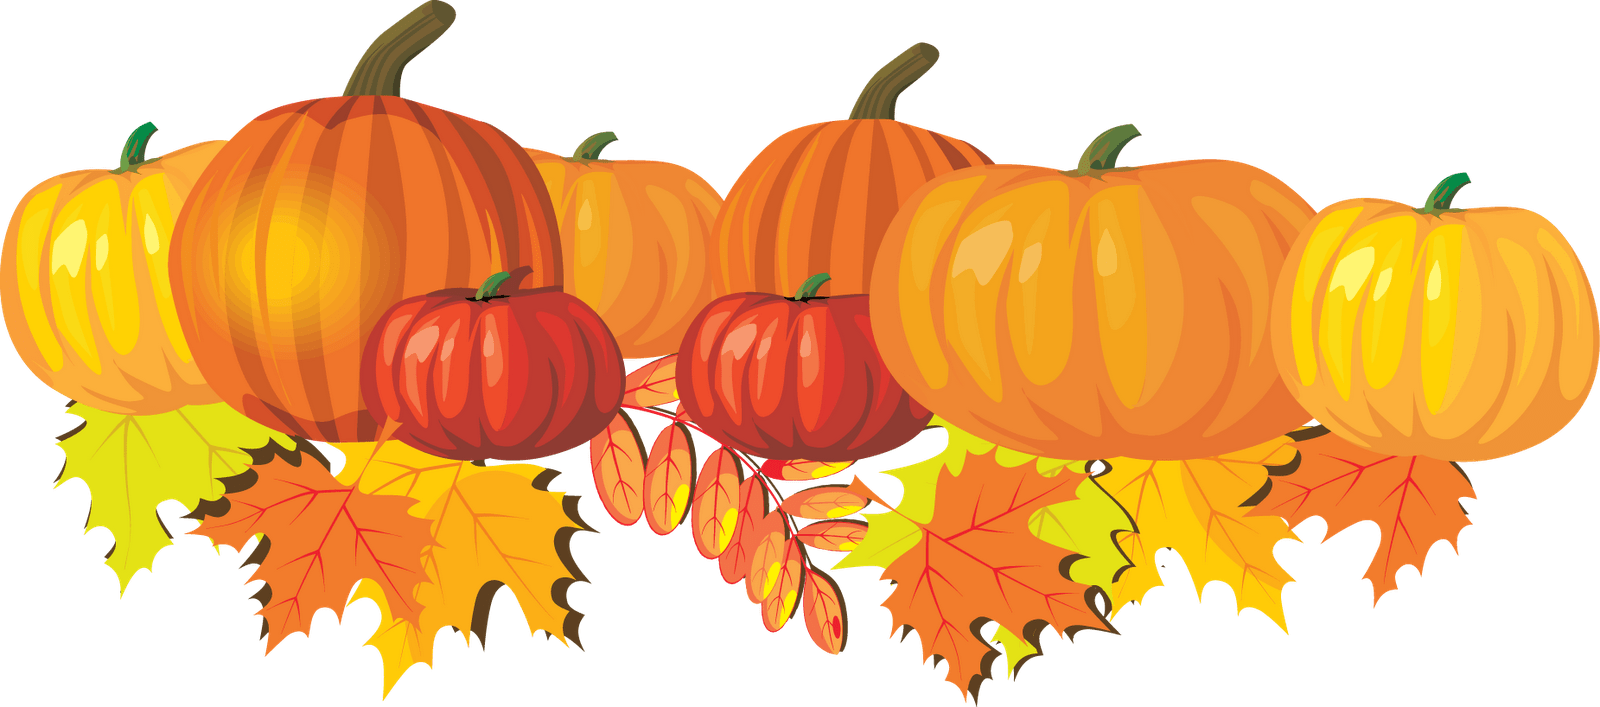 Medium Resolution Of Halloween Pumpkin Patch Clip Art - Fall Leaves And Pumpkin Clip Art (1600x707)